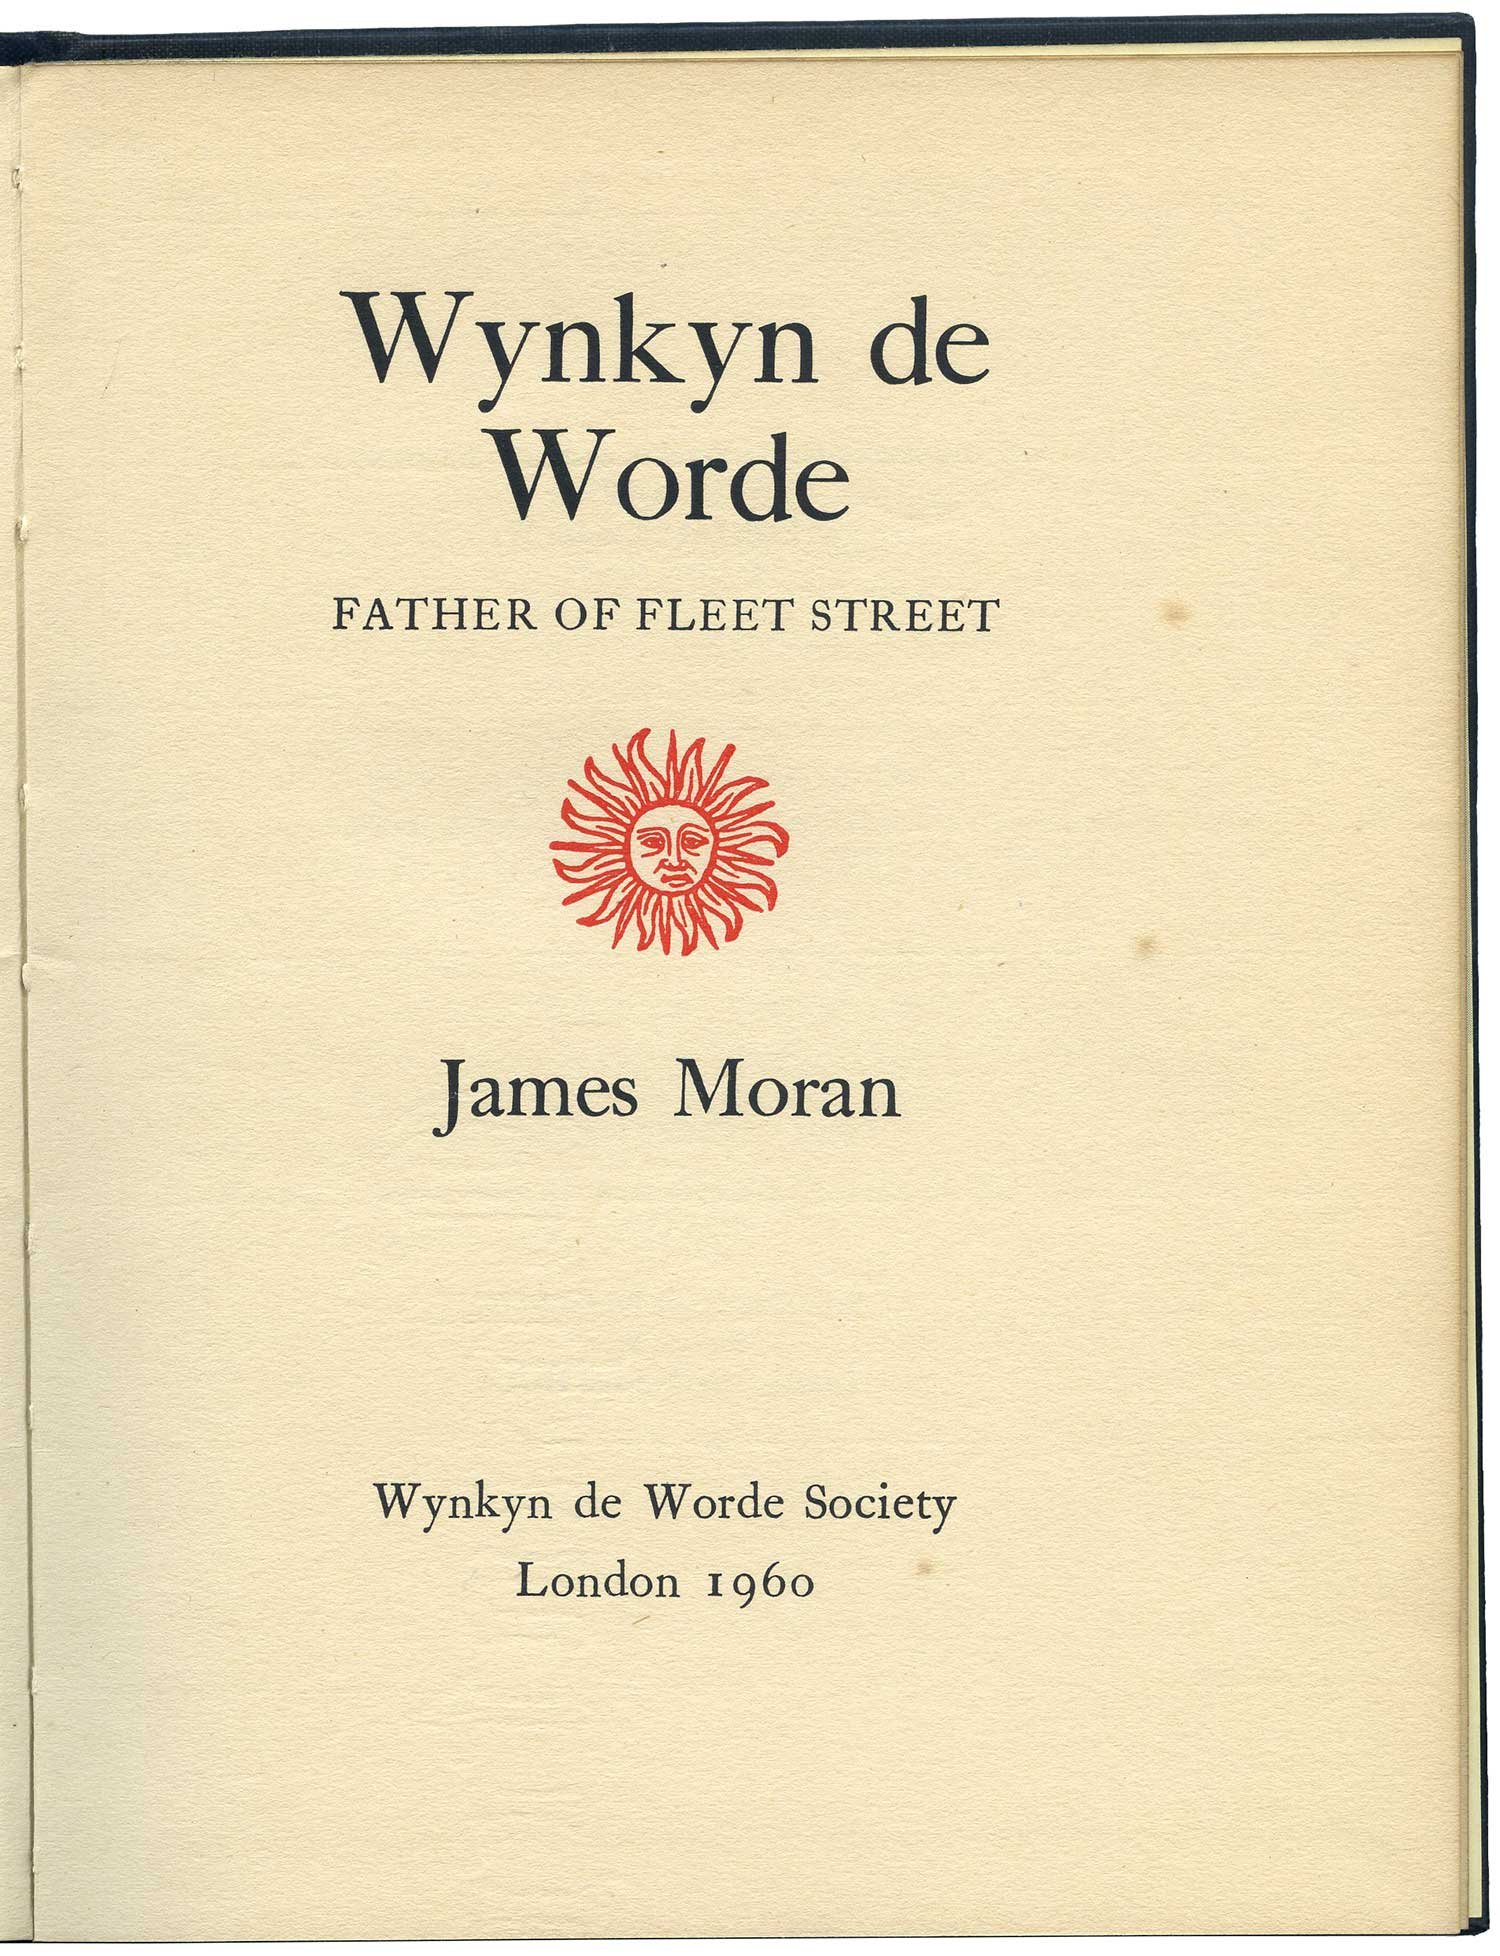   Wynkyn de Worde, Father of Fleet Street. James Moran, 1960.  